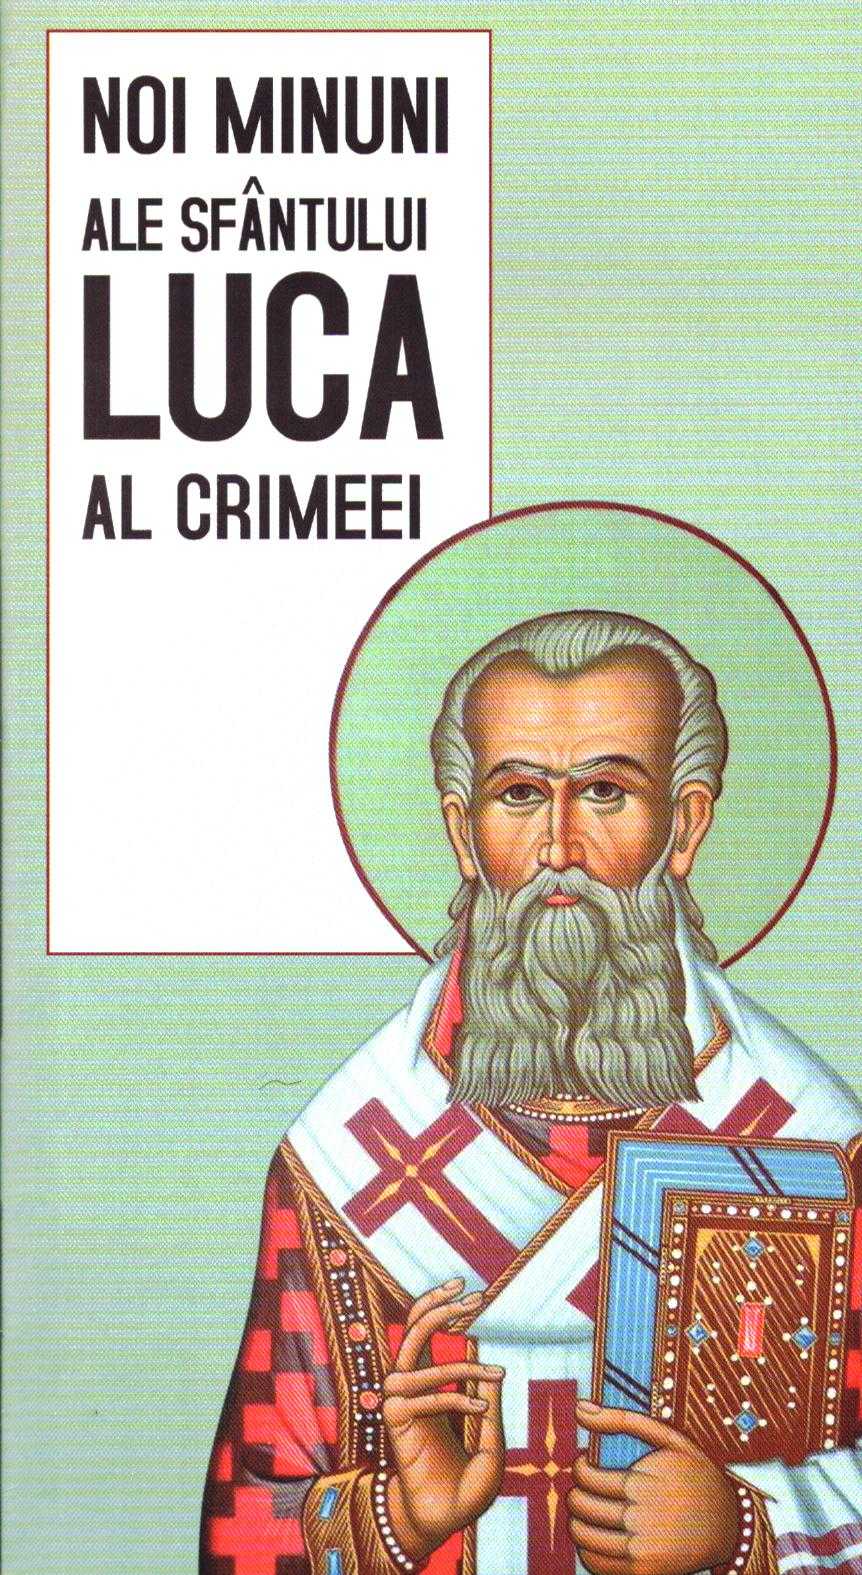 Noi minuni zle Sfantului Luca al Crimeei